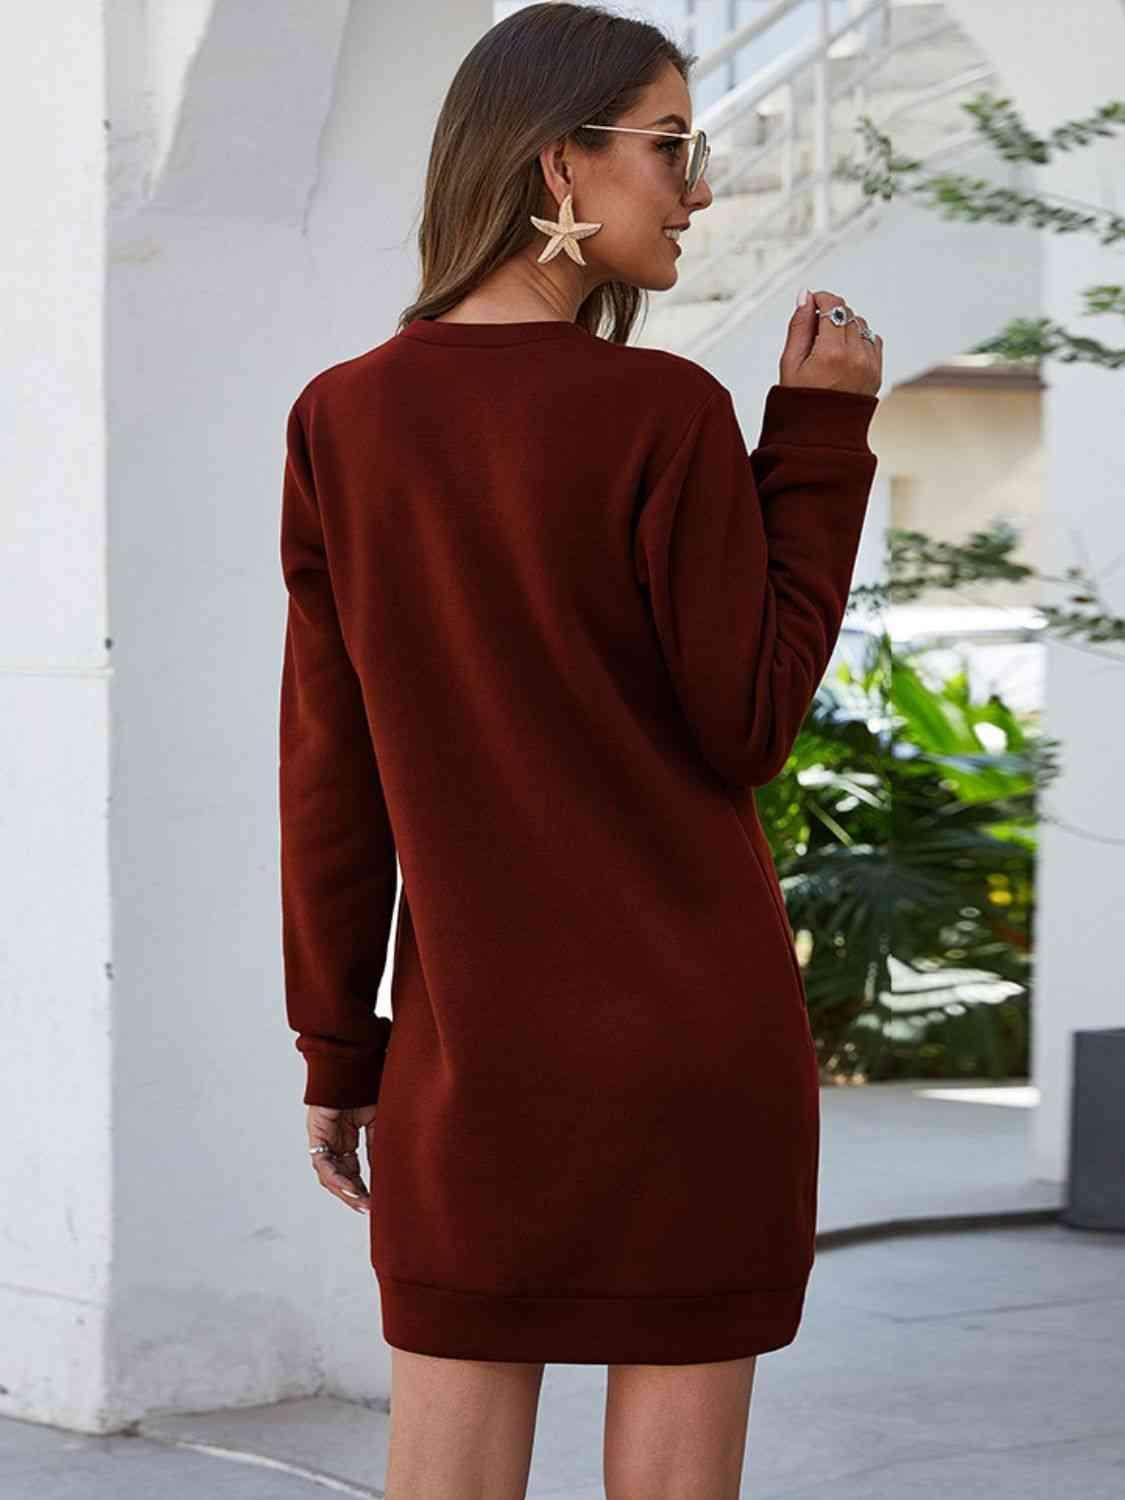 Bona Fide Fashion - Round Neck Long Sleeve Mini Dress with Pockets - Women Fashion - Bona Fide Fashion